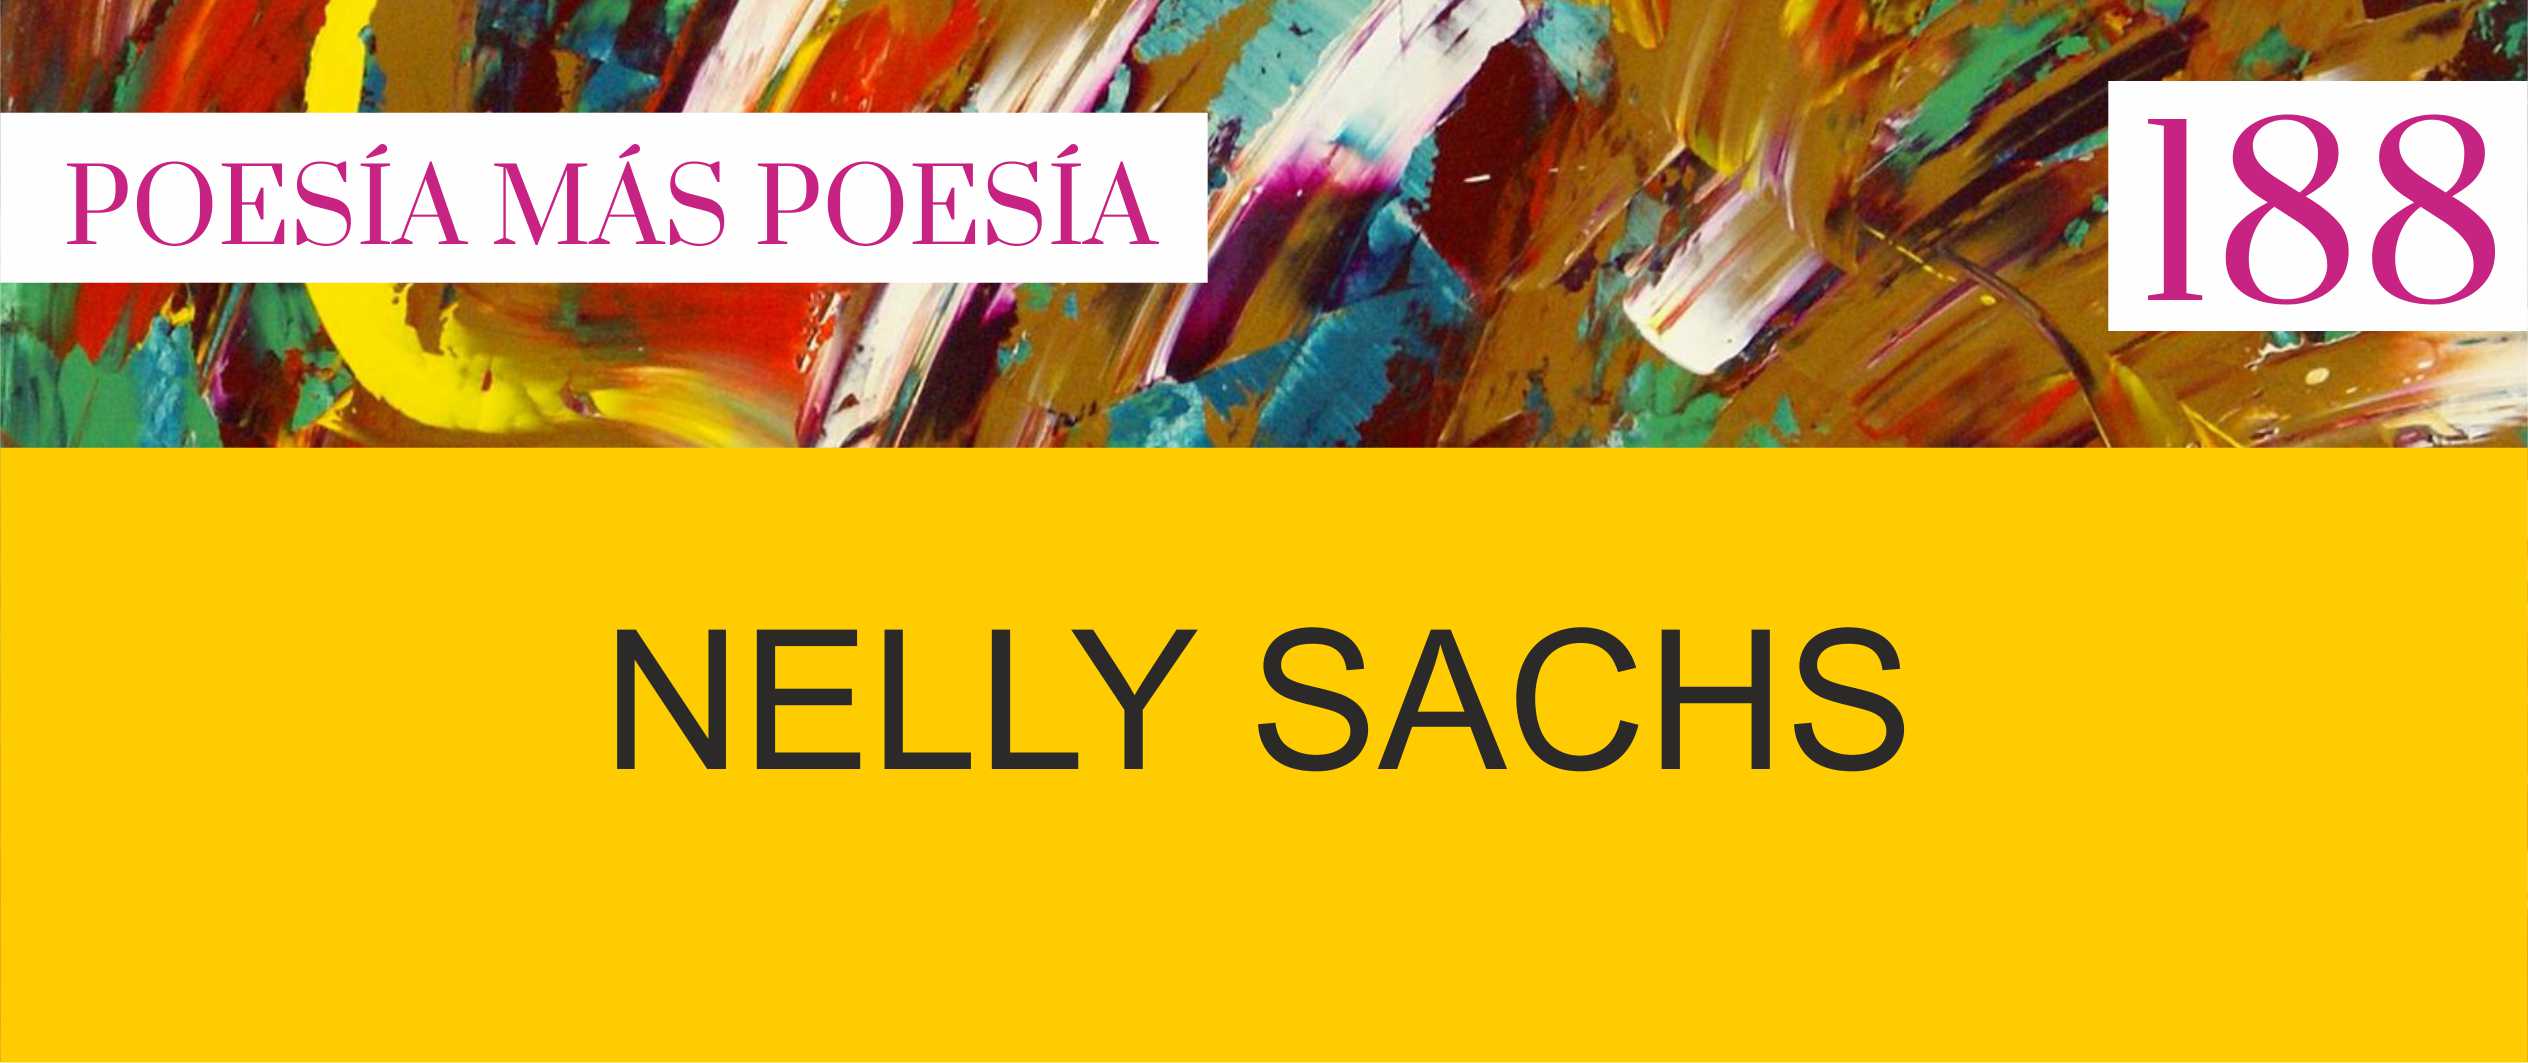 188. Poesía más Poesía: Nelly Sachs